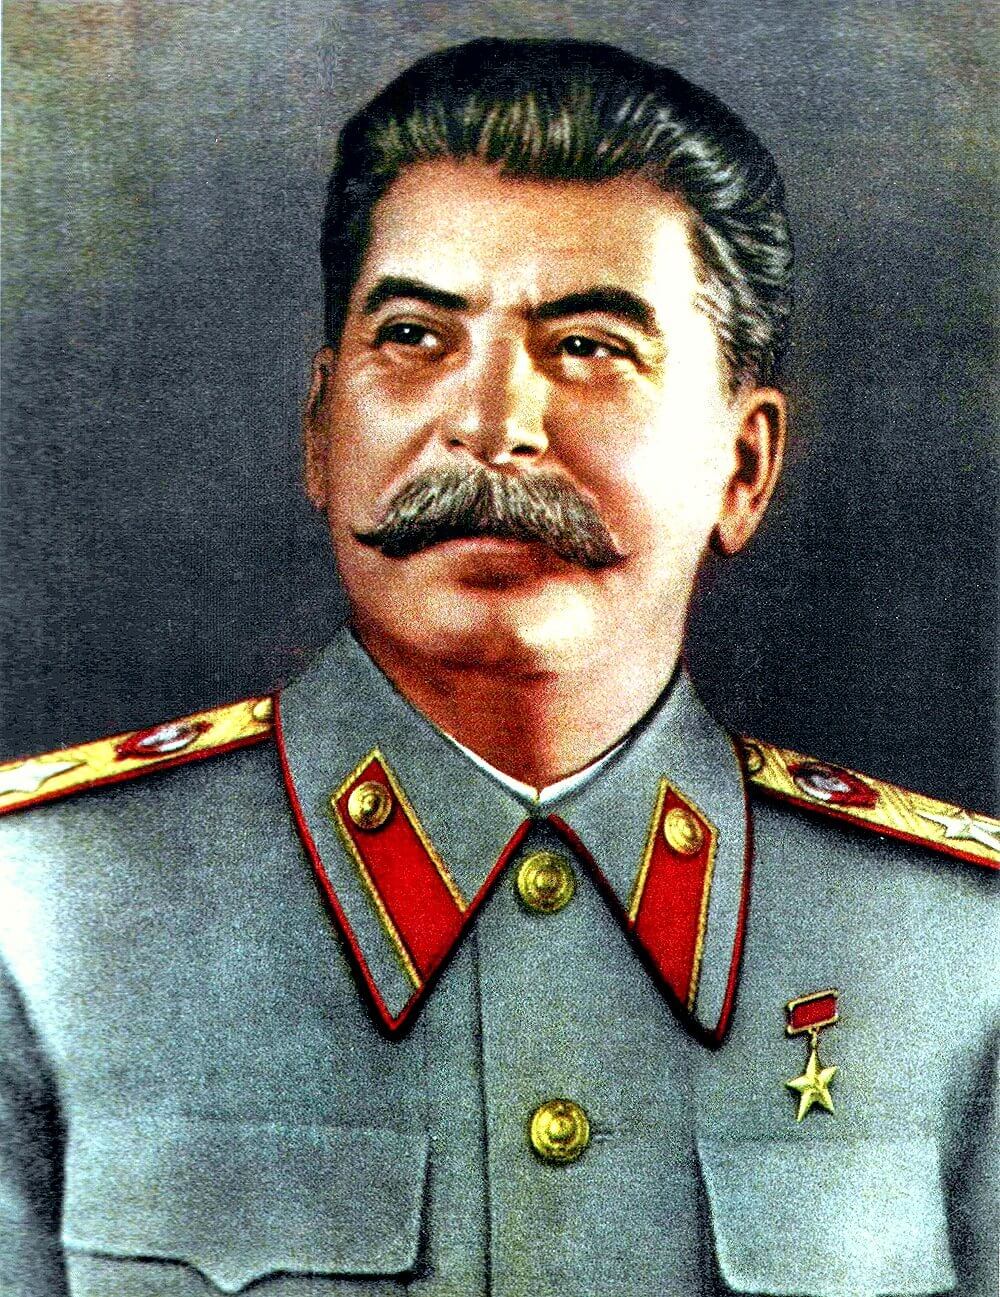 Иосиф виссарионович сталин в молодости фото